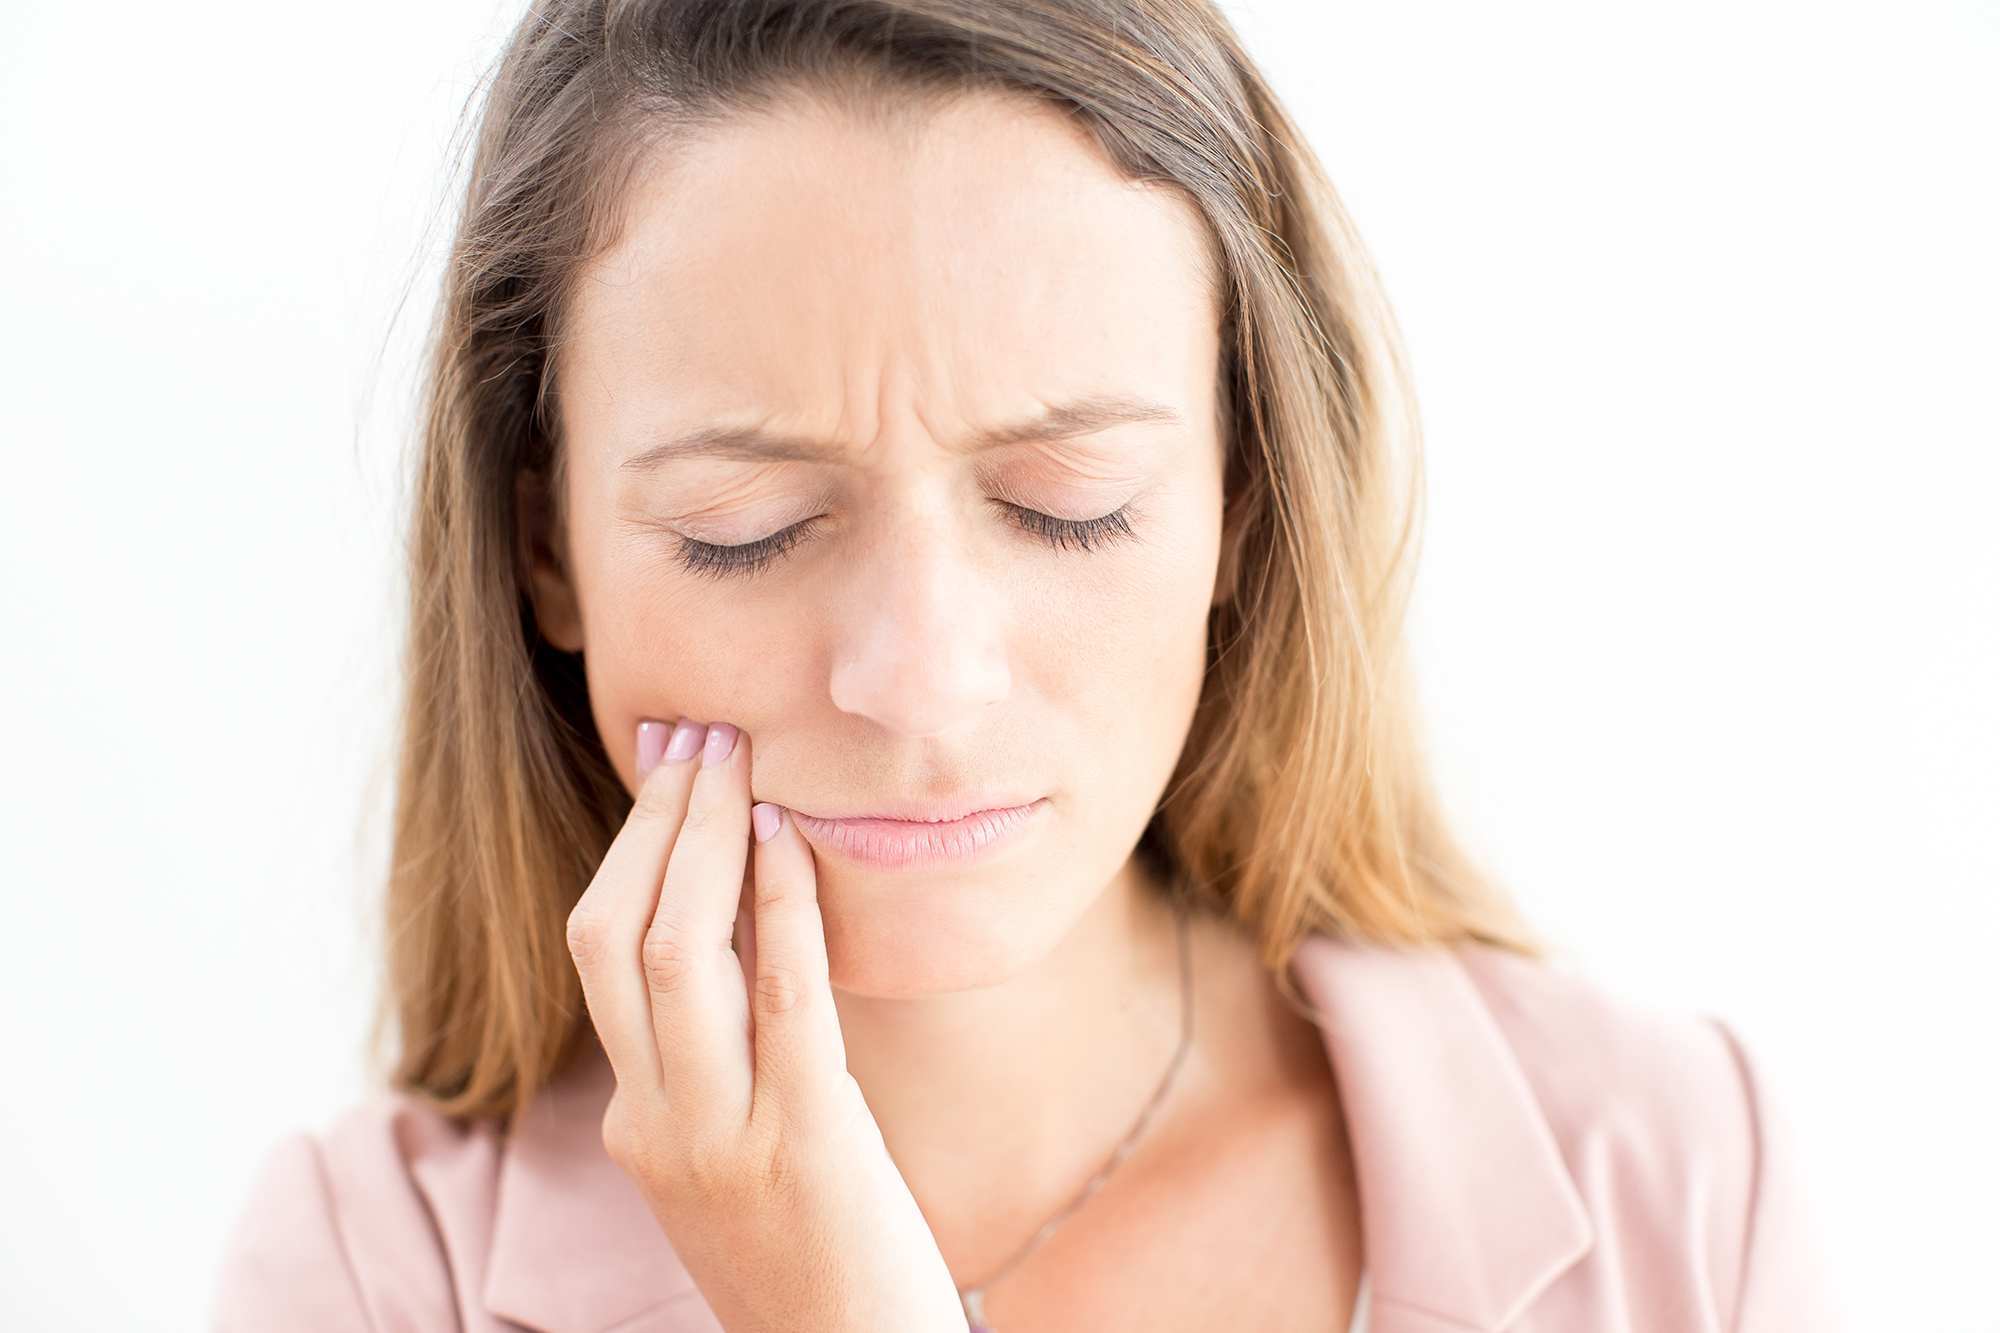 Absceso dental: síntomas y cómo prevenirlo - Acosta Cubero